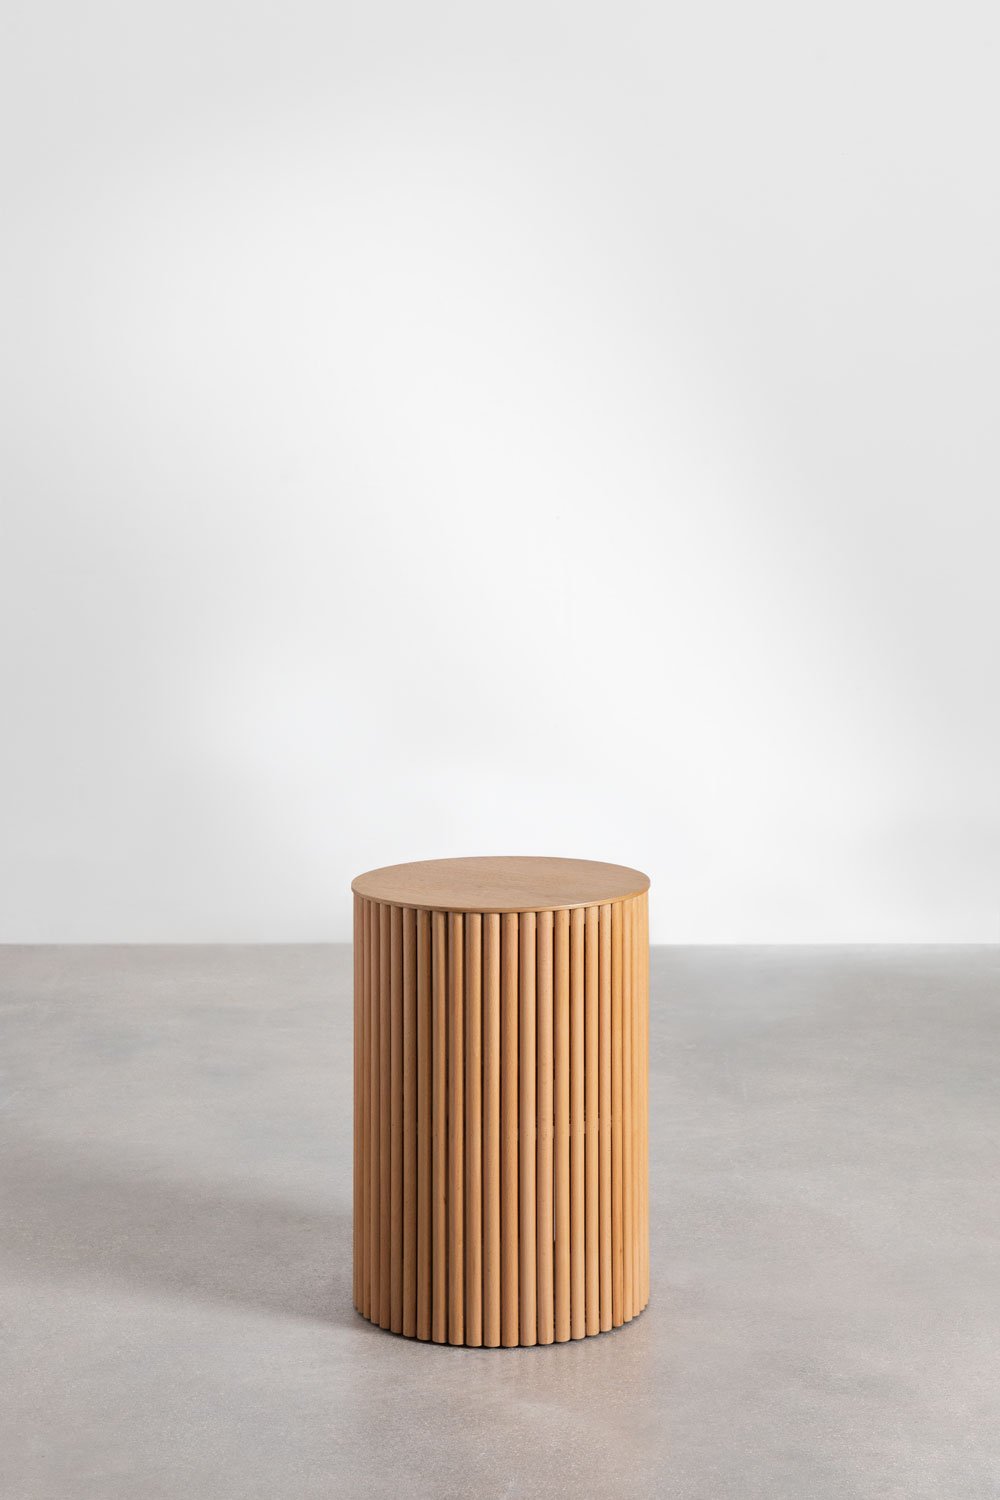 Okrągły stół pomocniczy z drewna (średnica 40 cm) Belmira, obrazek w galerii 2